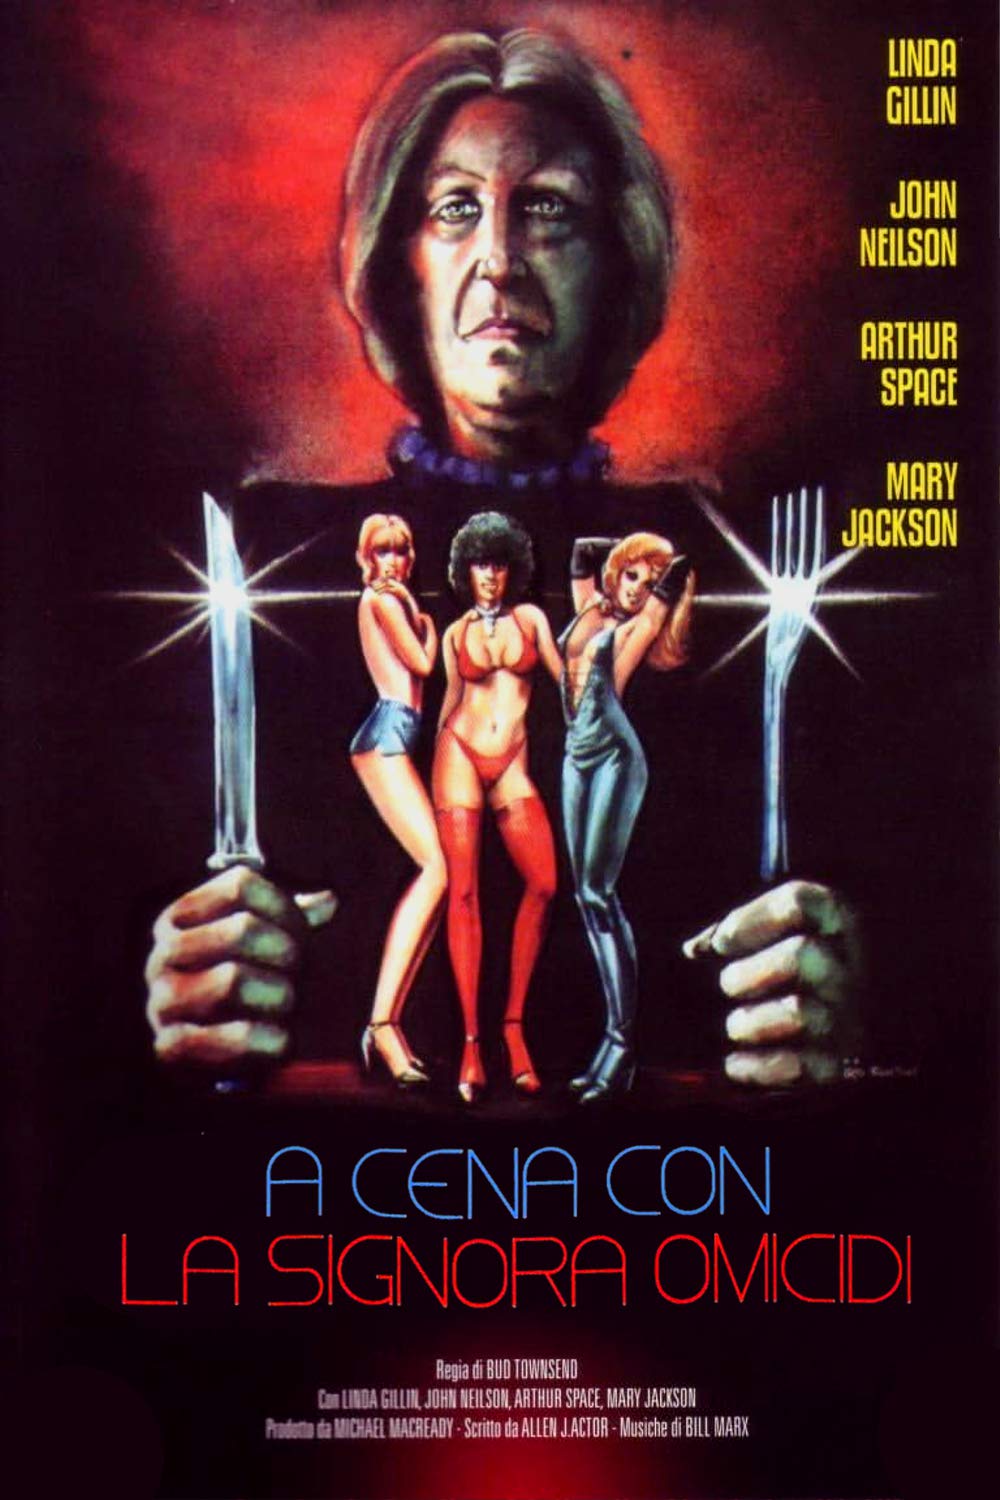 A cena con la signora omicidi (1972)